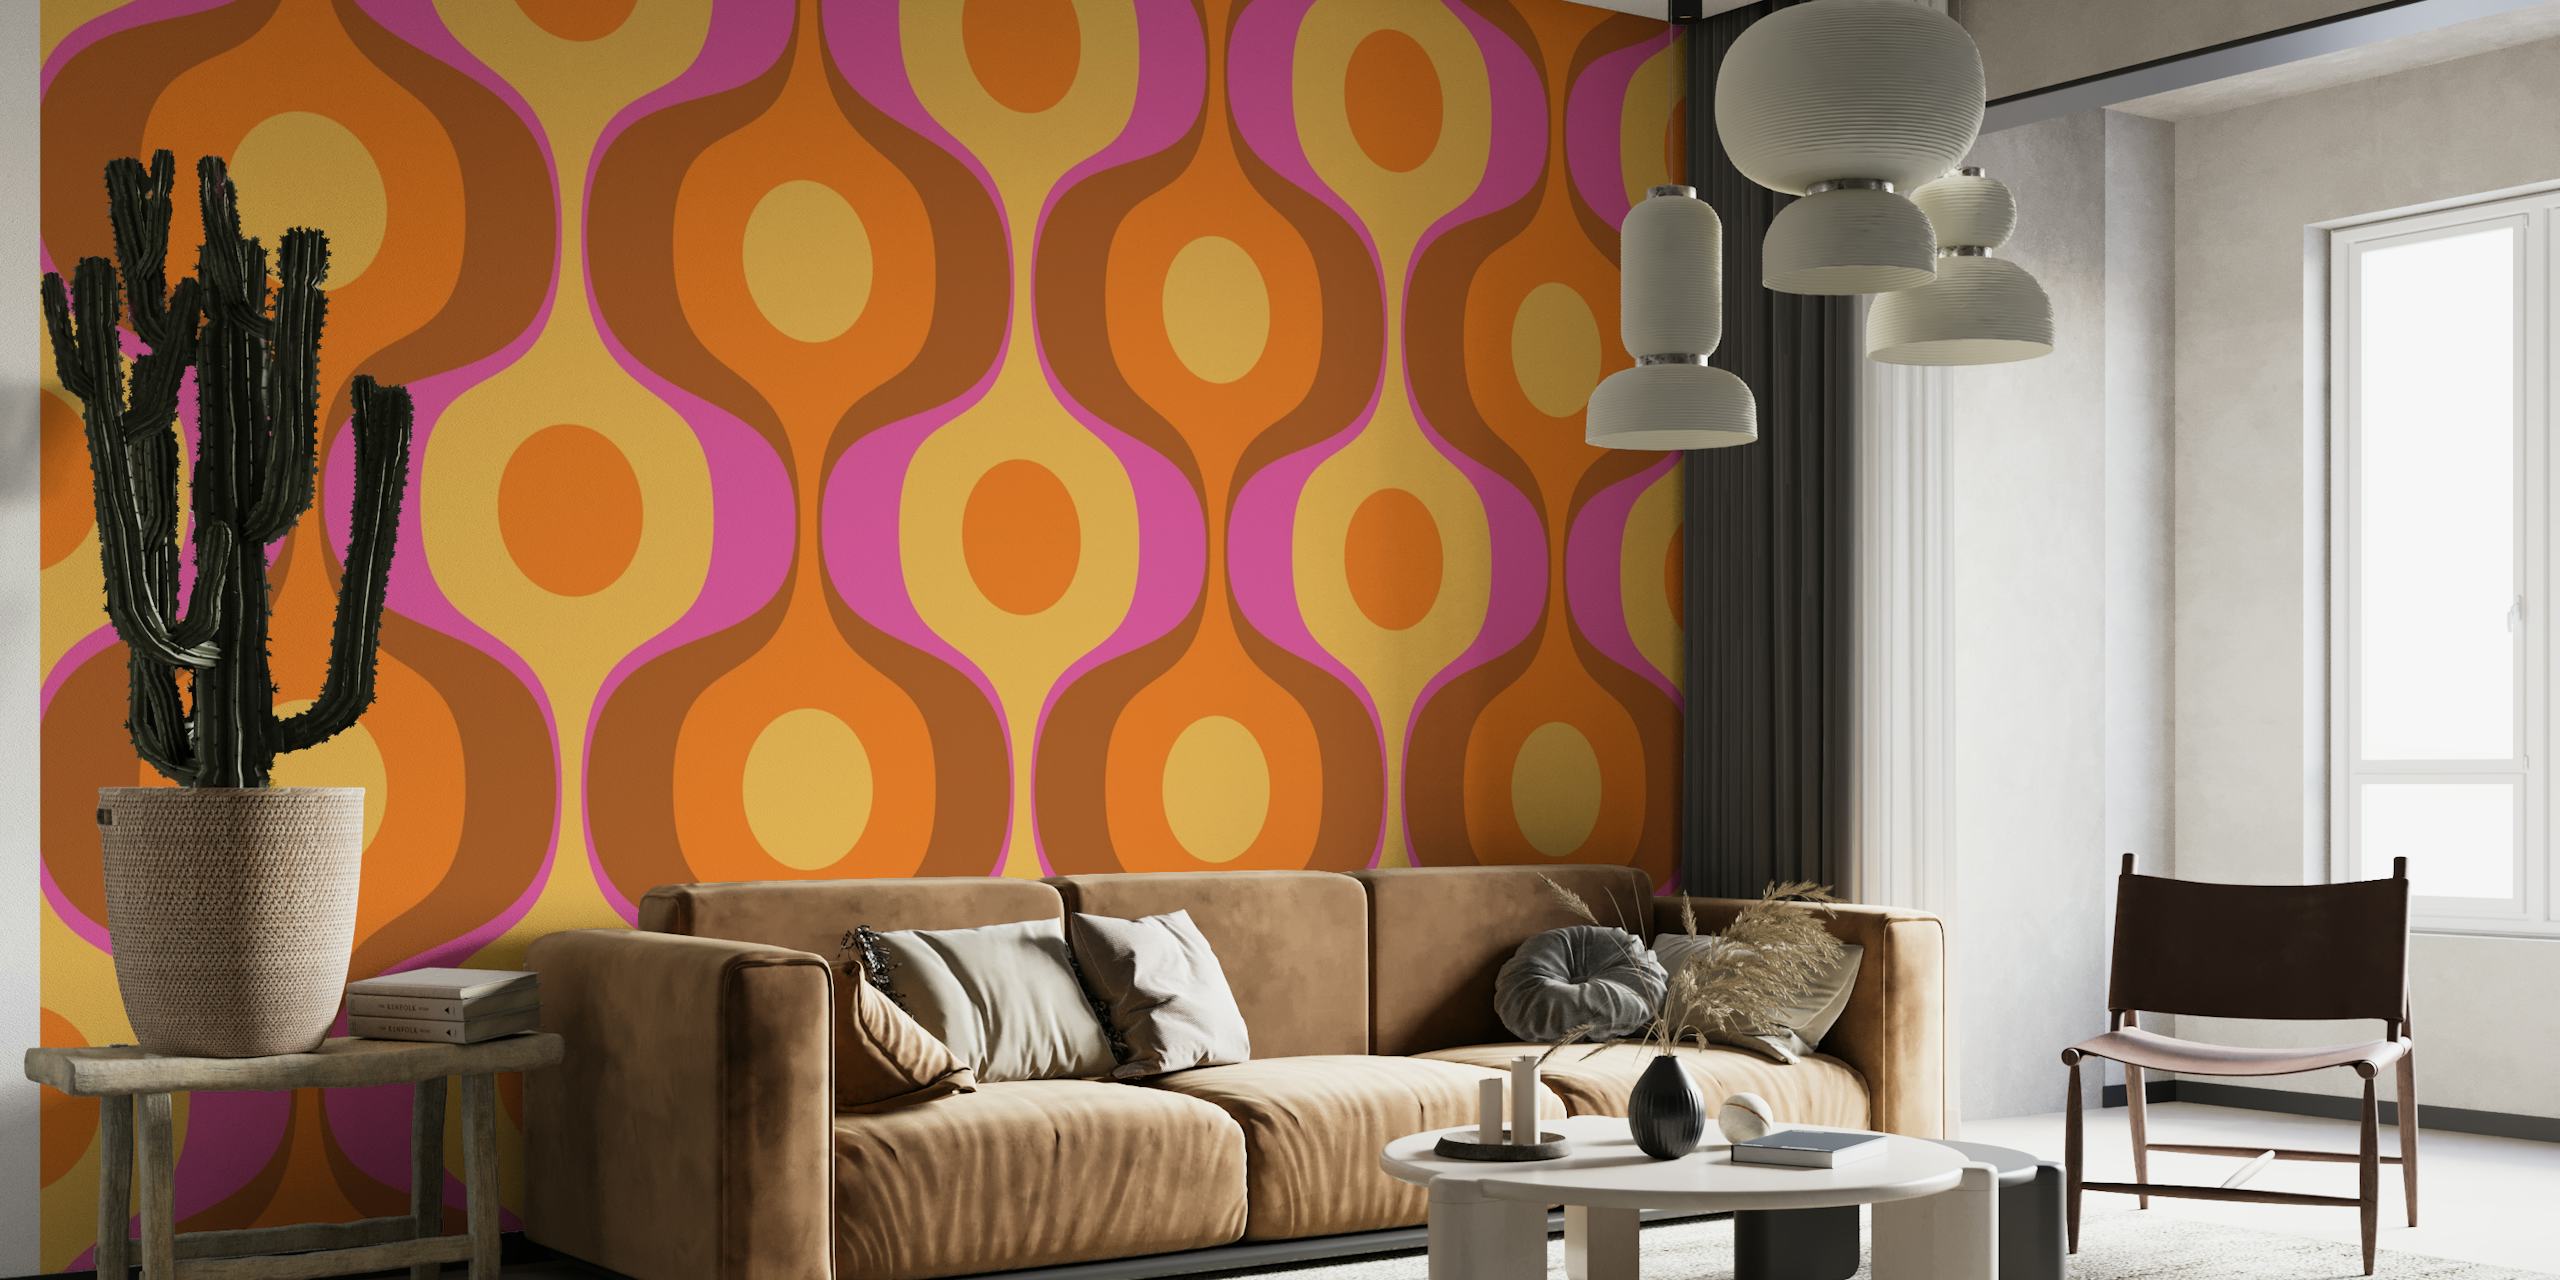 Vívido mural de pared de inspiración retro con ondas geométricas abstractas en terracota, mostaza y malva